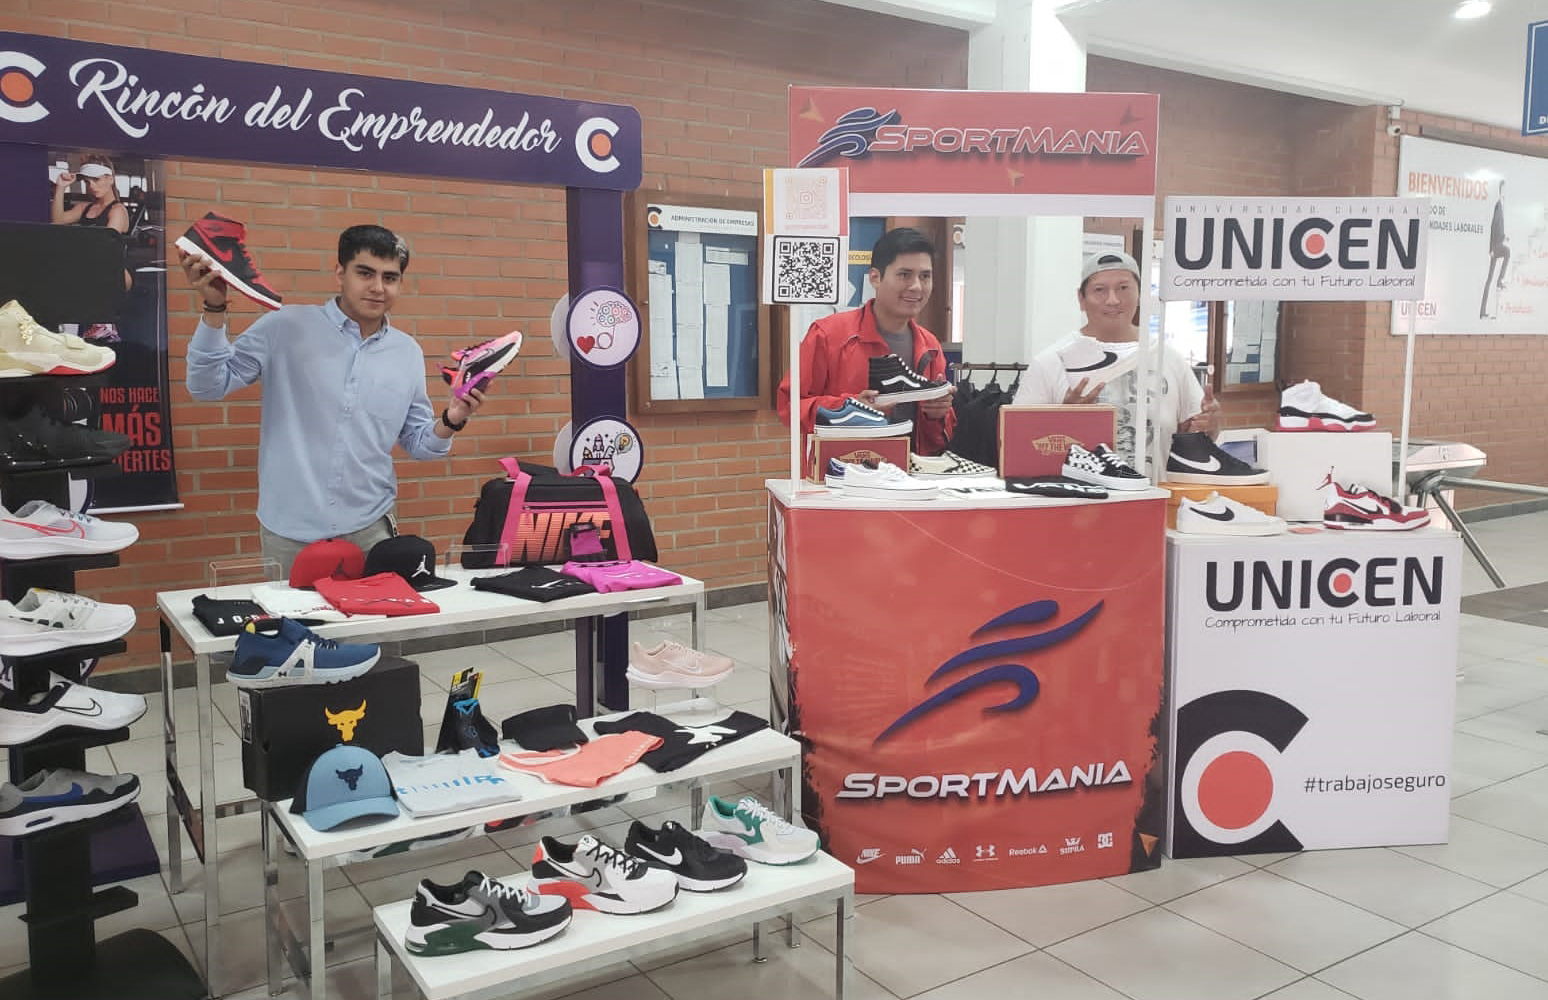 Sportmania Store forma parte de «El Rincón del Emprendedor»